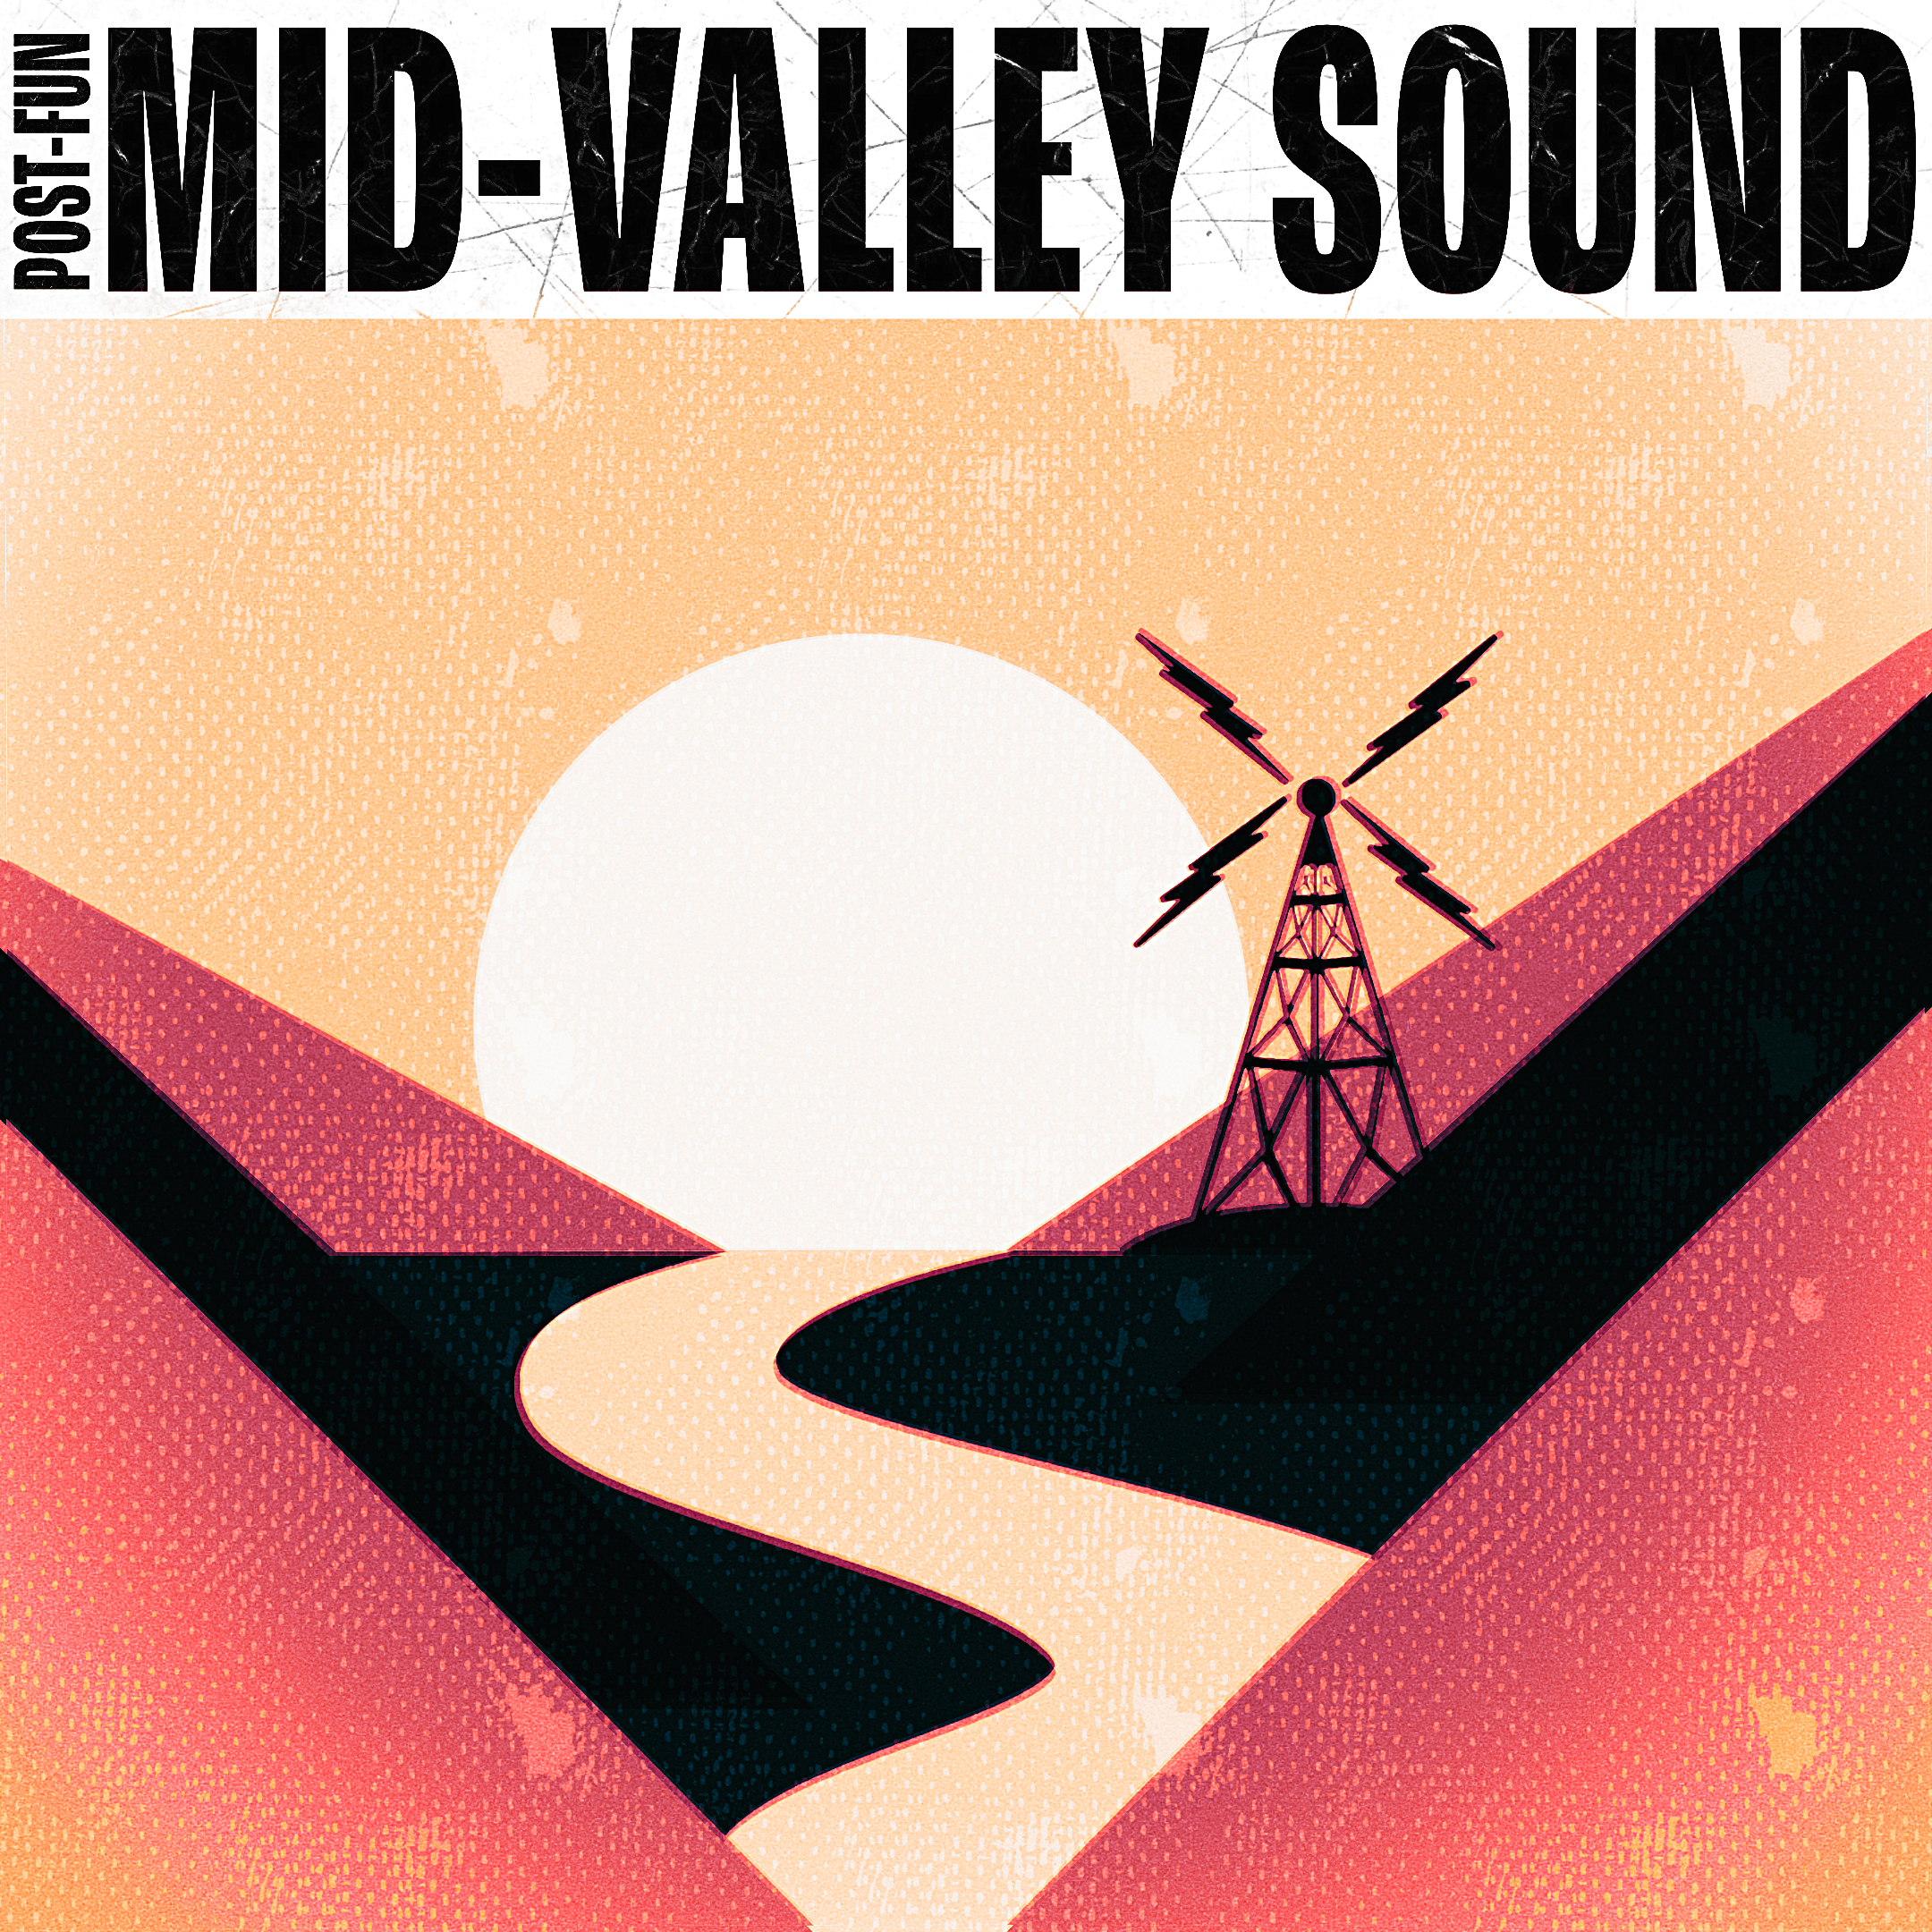 Mid-Valley Sound